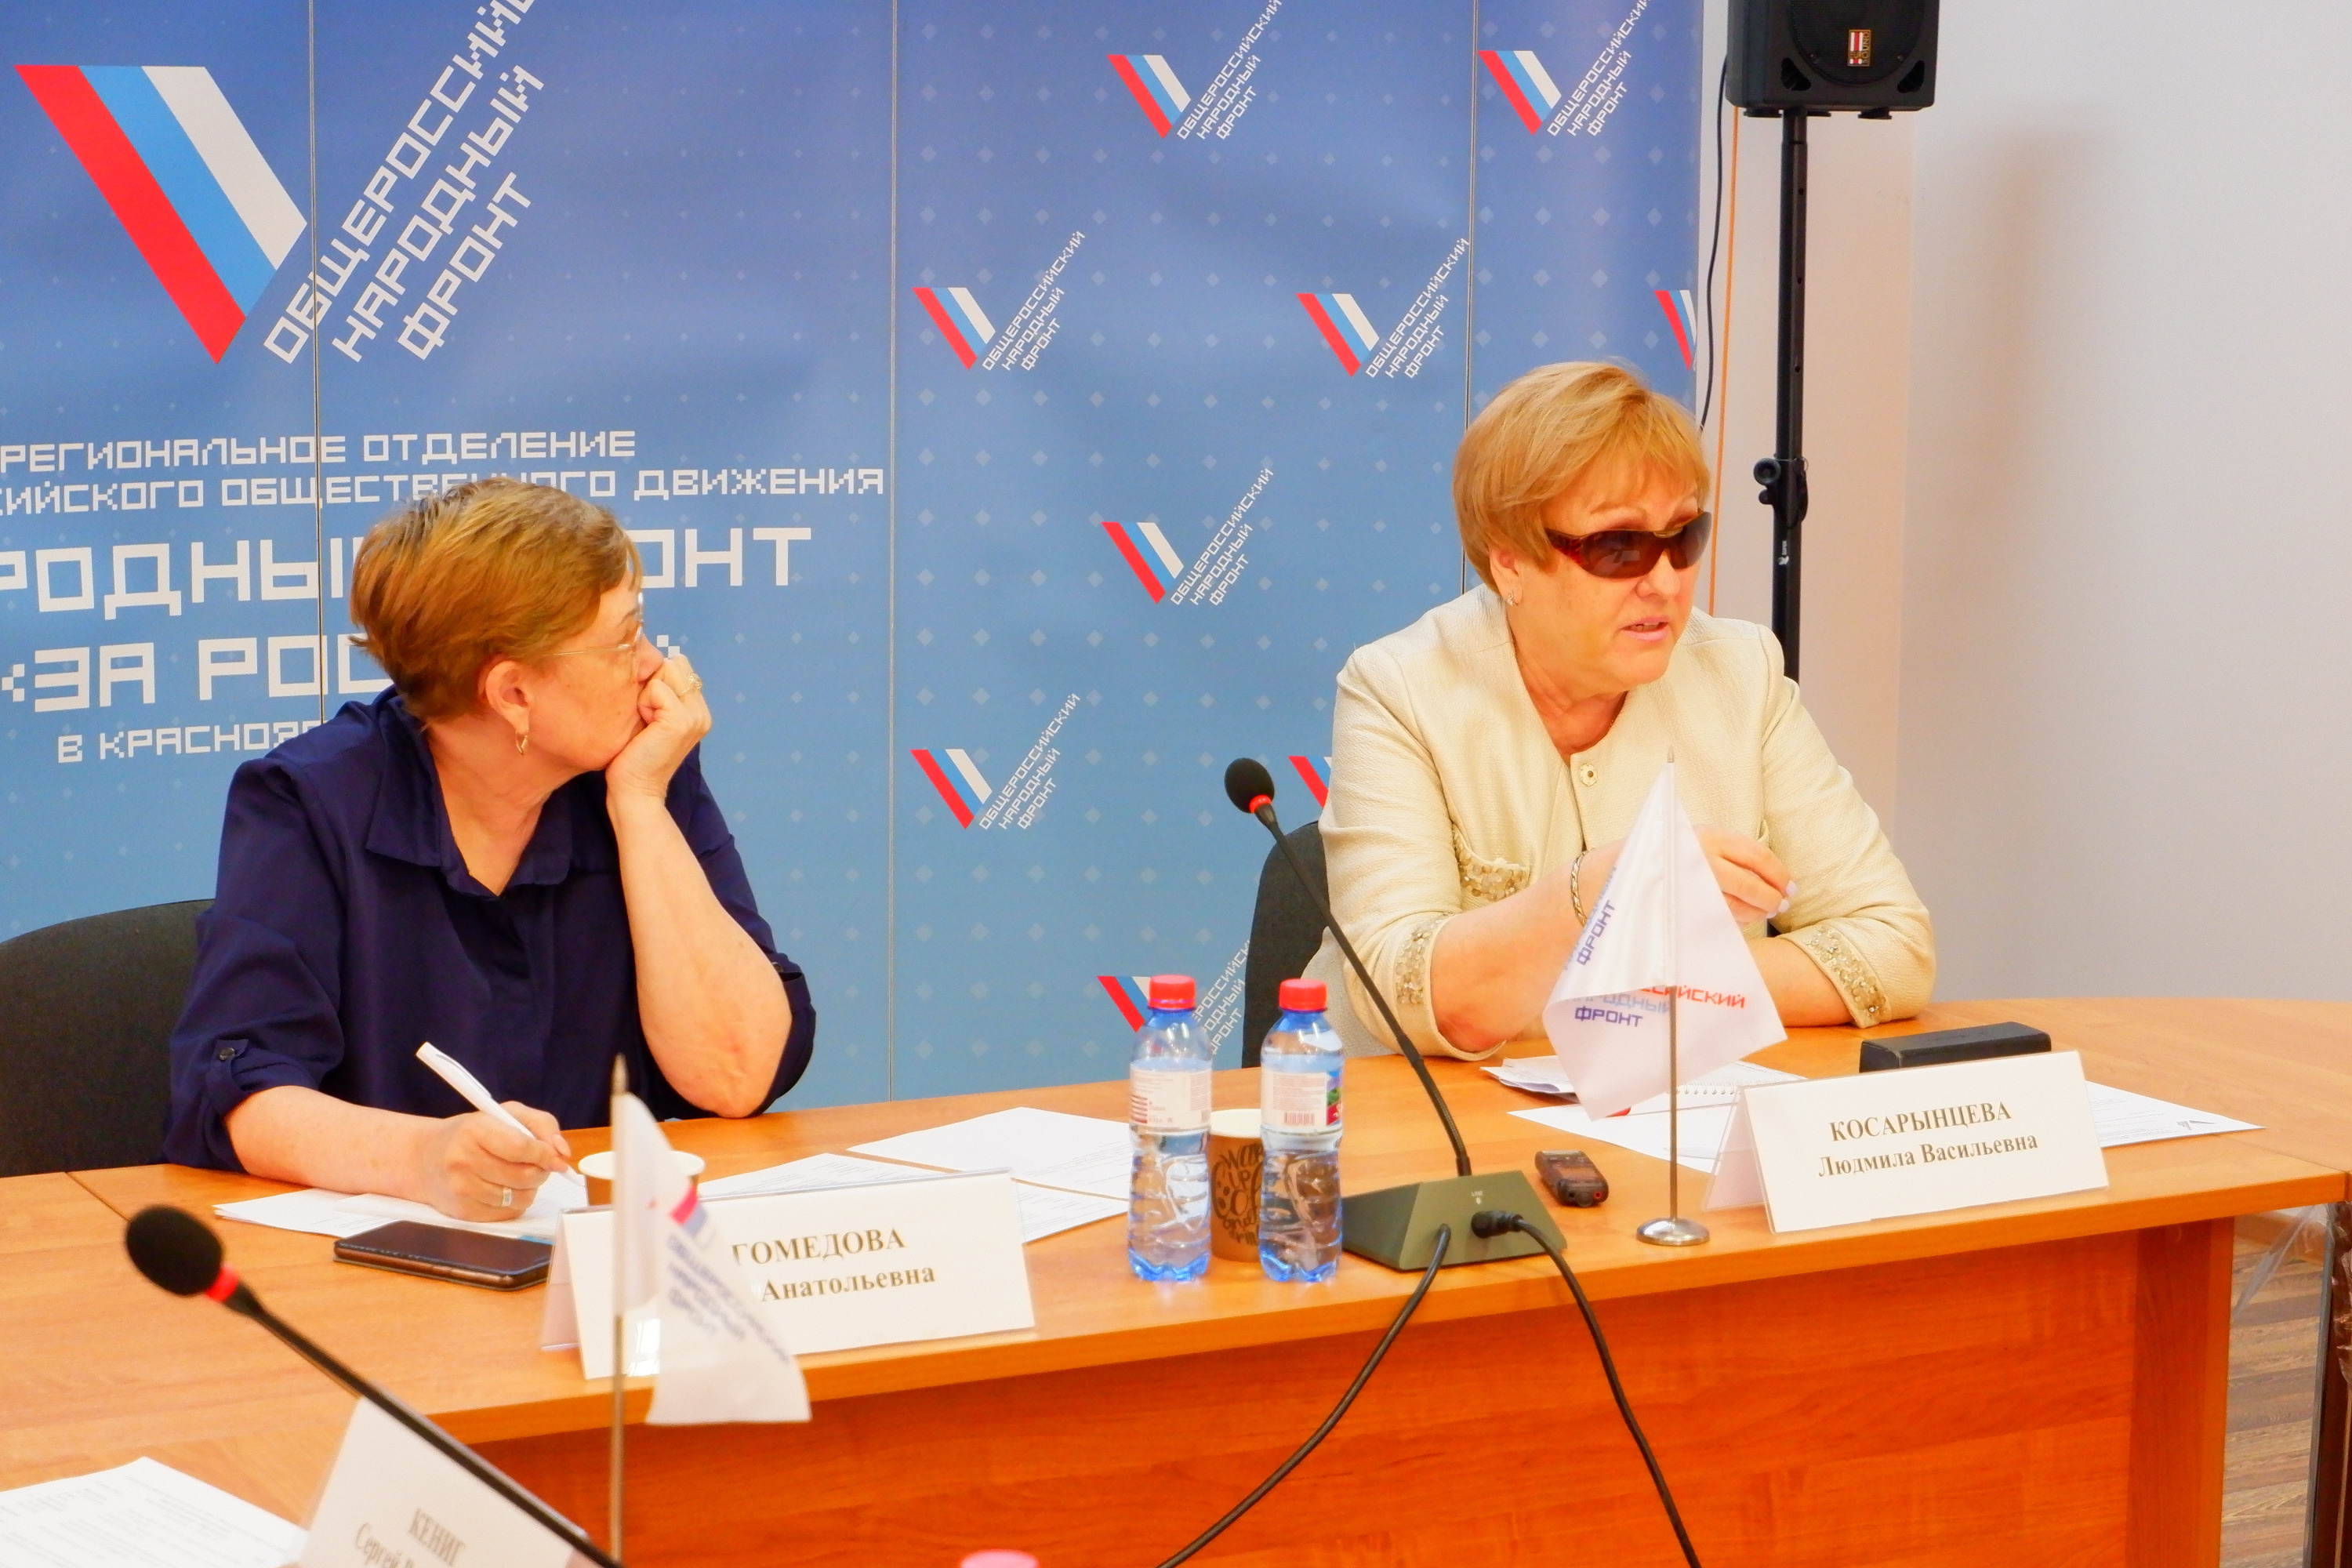 Людмила Косарынцева (на фото слева) знает, что показатели средней зарплаты на самом деле расходятся с реальностью